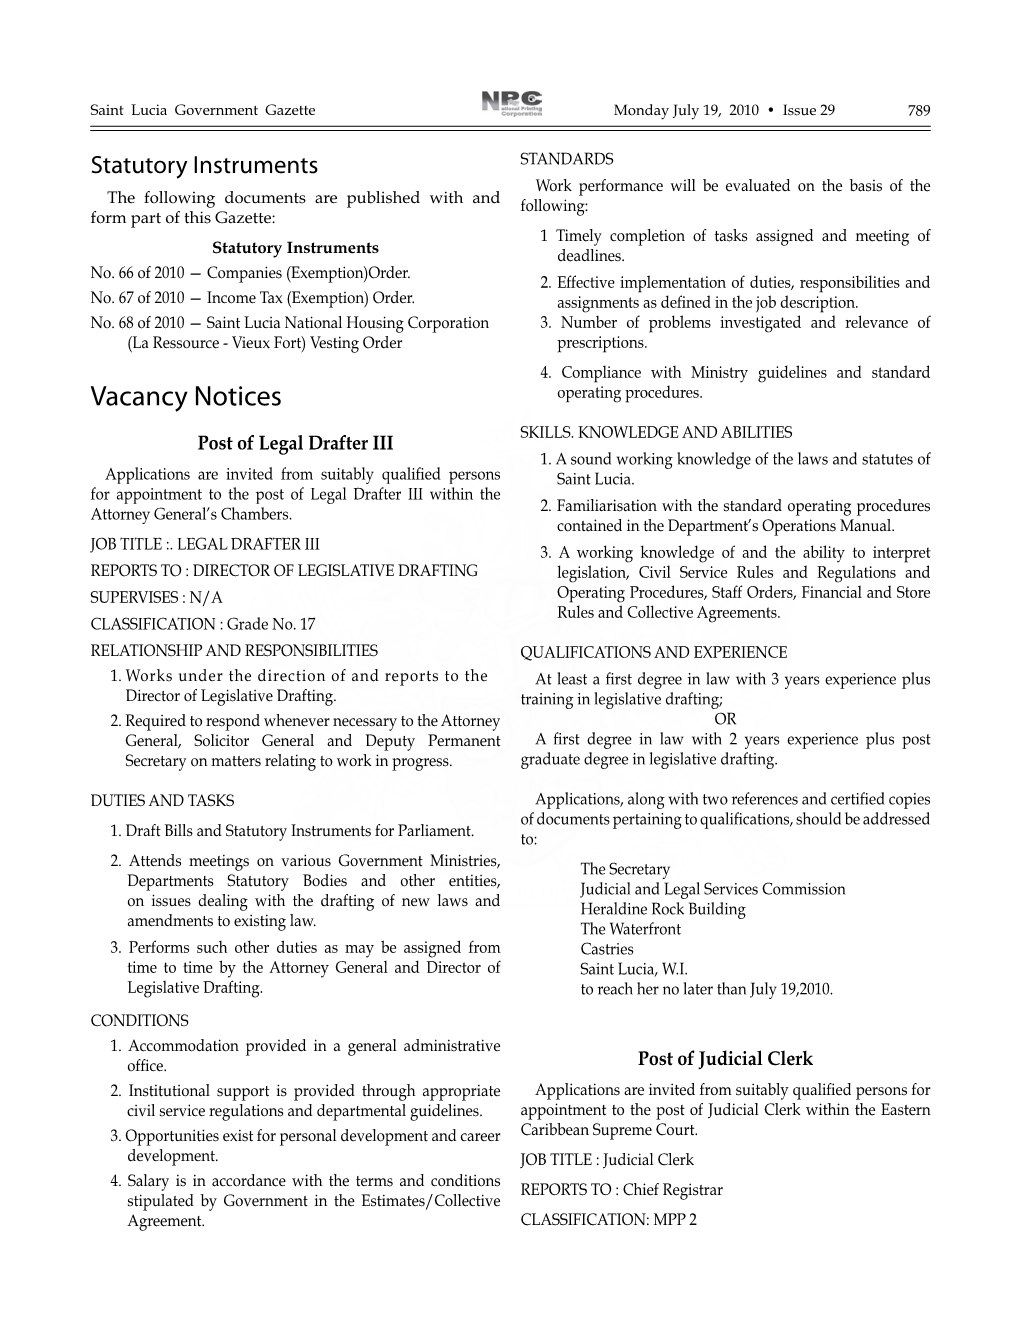 Vacancy Notices Operating Procedures